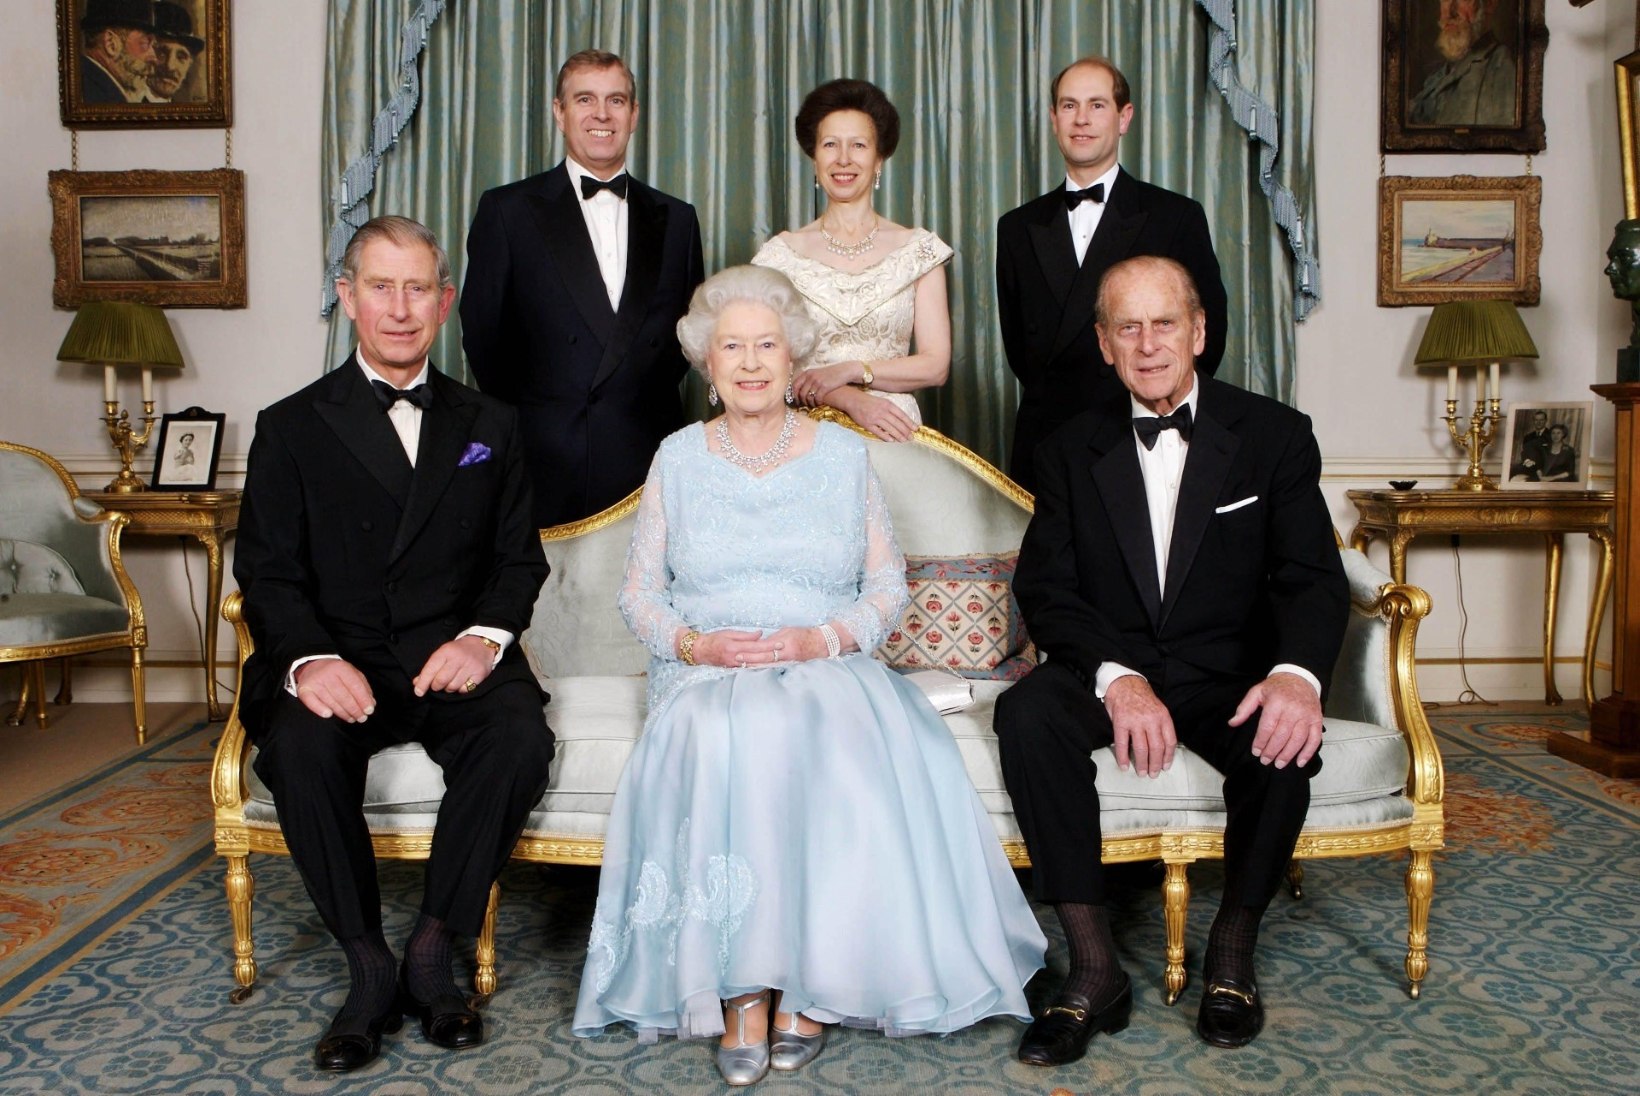 Afäärid ja purunenud abielud ehk kuninganna Elizabeth II laste kirev armuelu